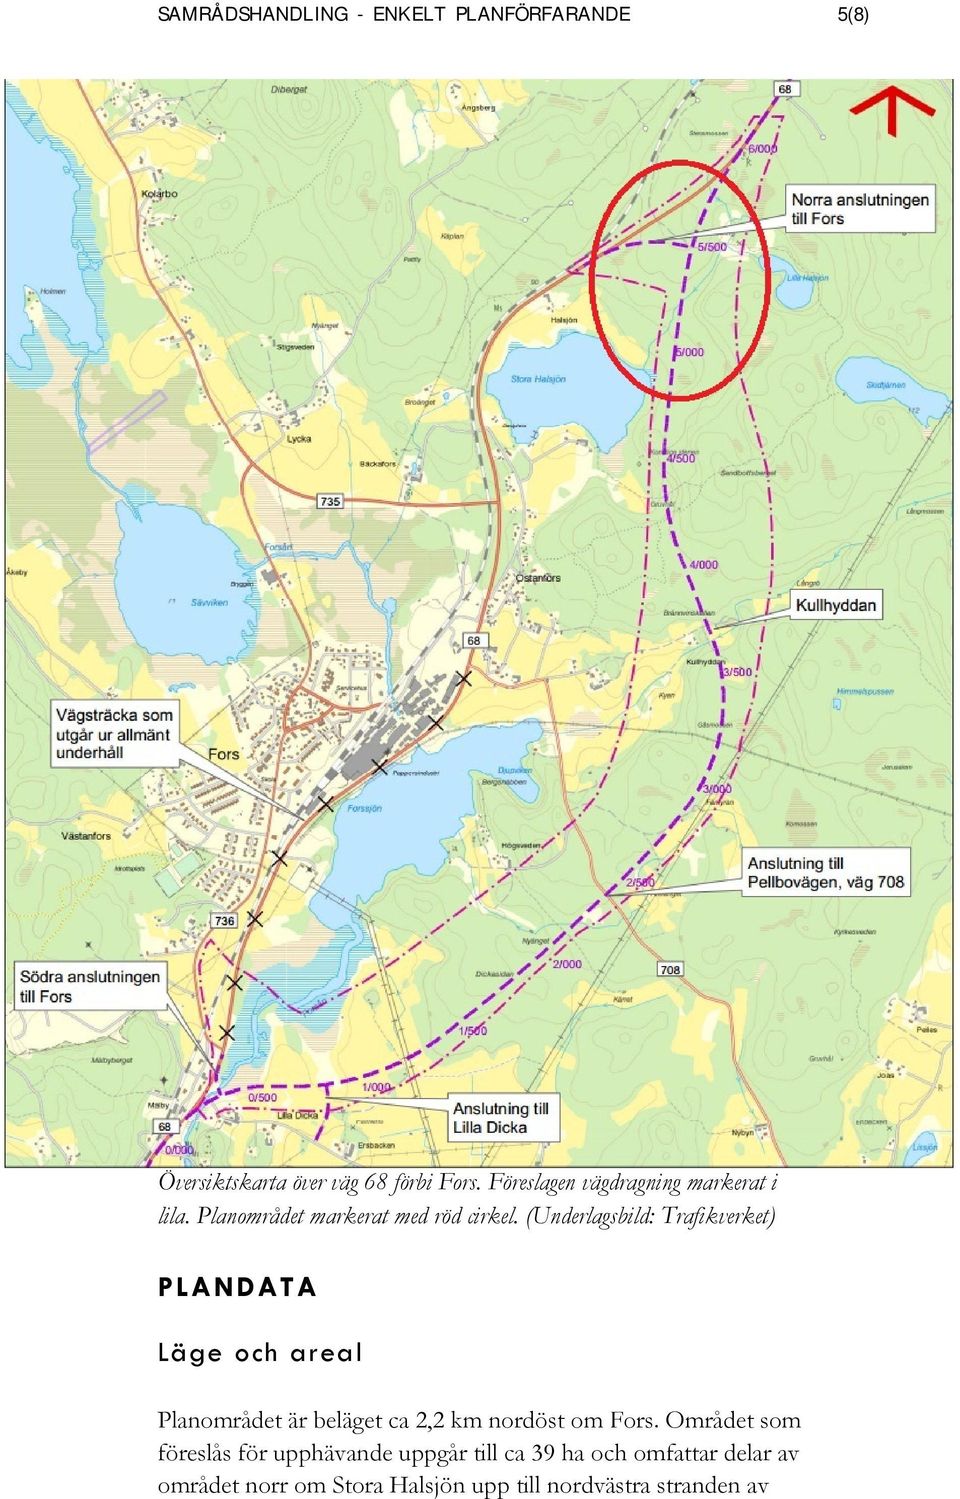 (Underlagsbild: Trafikverket) PLANDATA Läge och areal Planområdet är beläget ca 2,2 km nordöst om